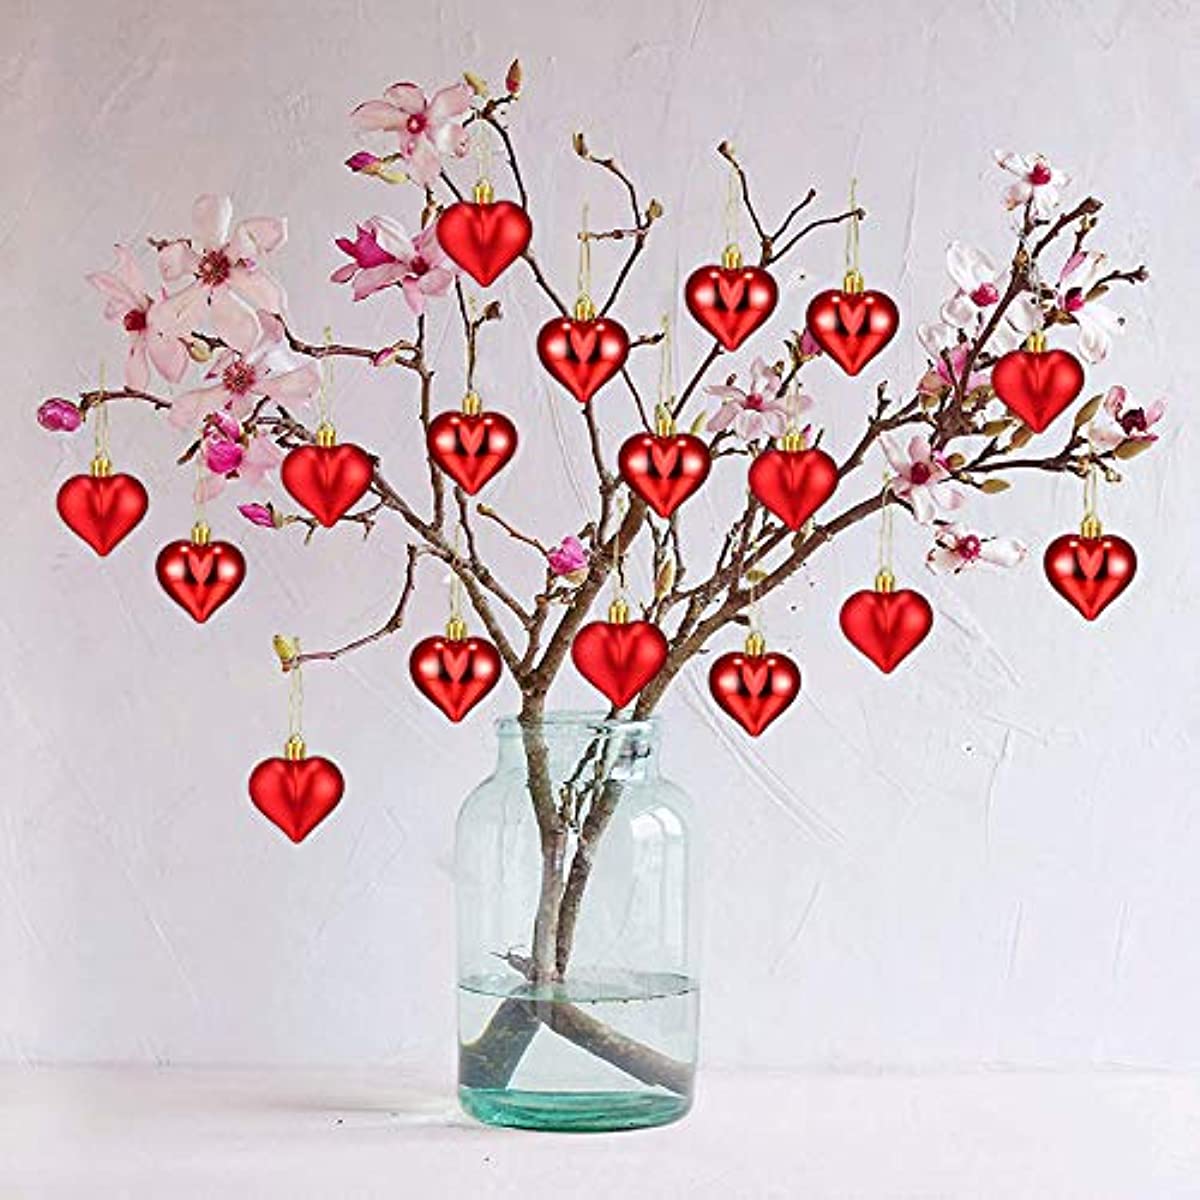 24 Stück, Valentinstag Herzförmige Ornamente, glänzende und matte Herzkugeln hängende Dekorationen für Valentinstag Hochzeit Jubiläum Home Party Dekor